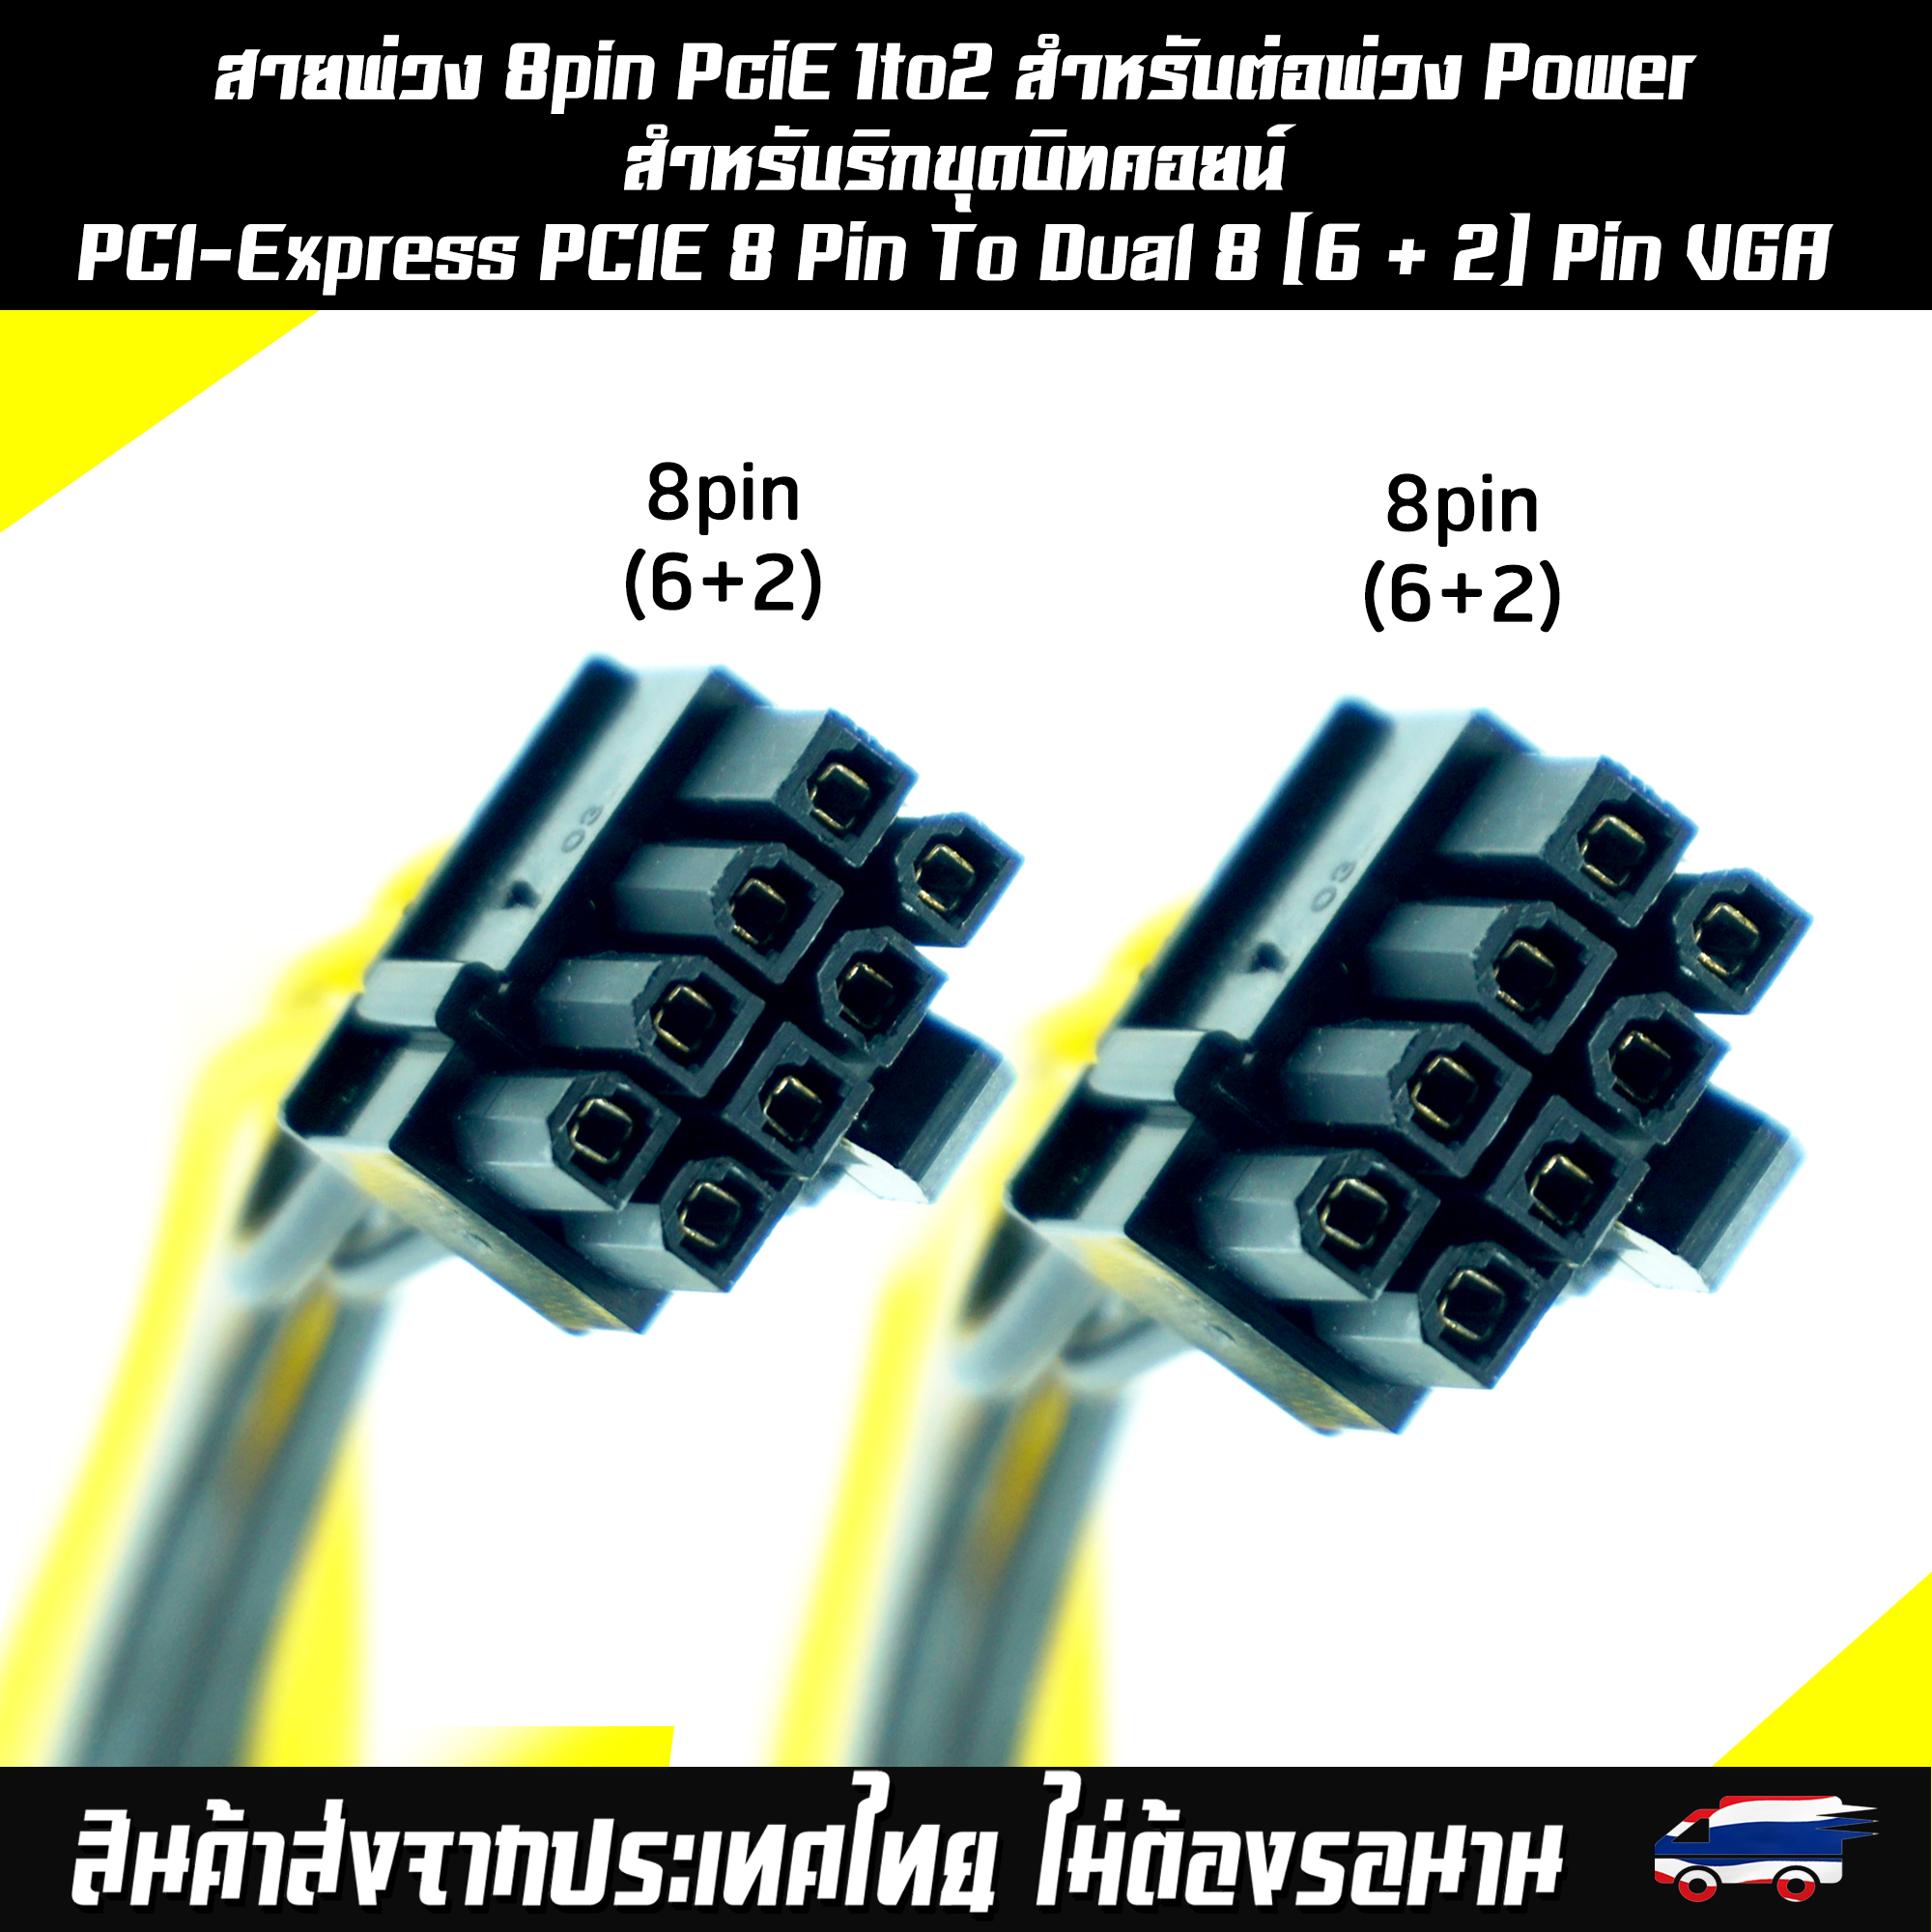 รูปภาพเพิ่มเติมเกี่ยวกับ สายพ่วง 8pin PciE 1to2 สำหรับต่อพ่วง Power สำหรับริกขุดบิทคอยน์ PCI-Express PCIE 8 Pin To Dual 8 (6 + 2) Pin VGA กราฟิกการ์ดสายแยก สายพ่วง